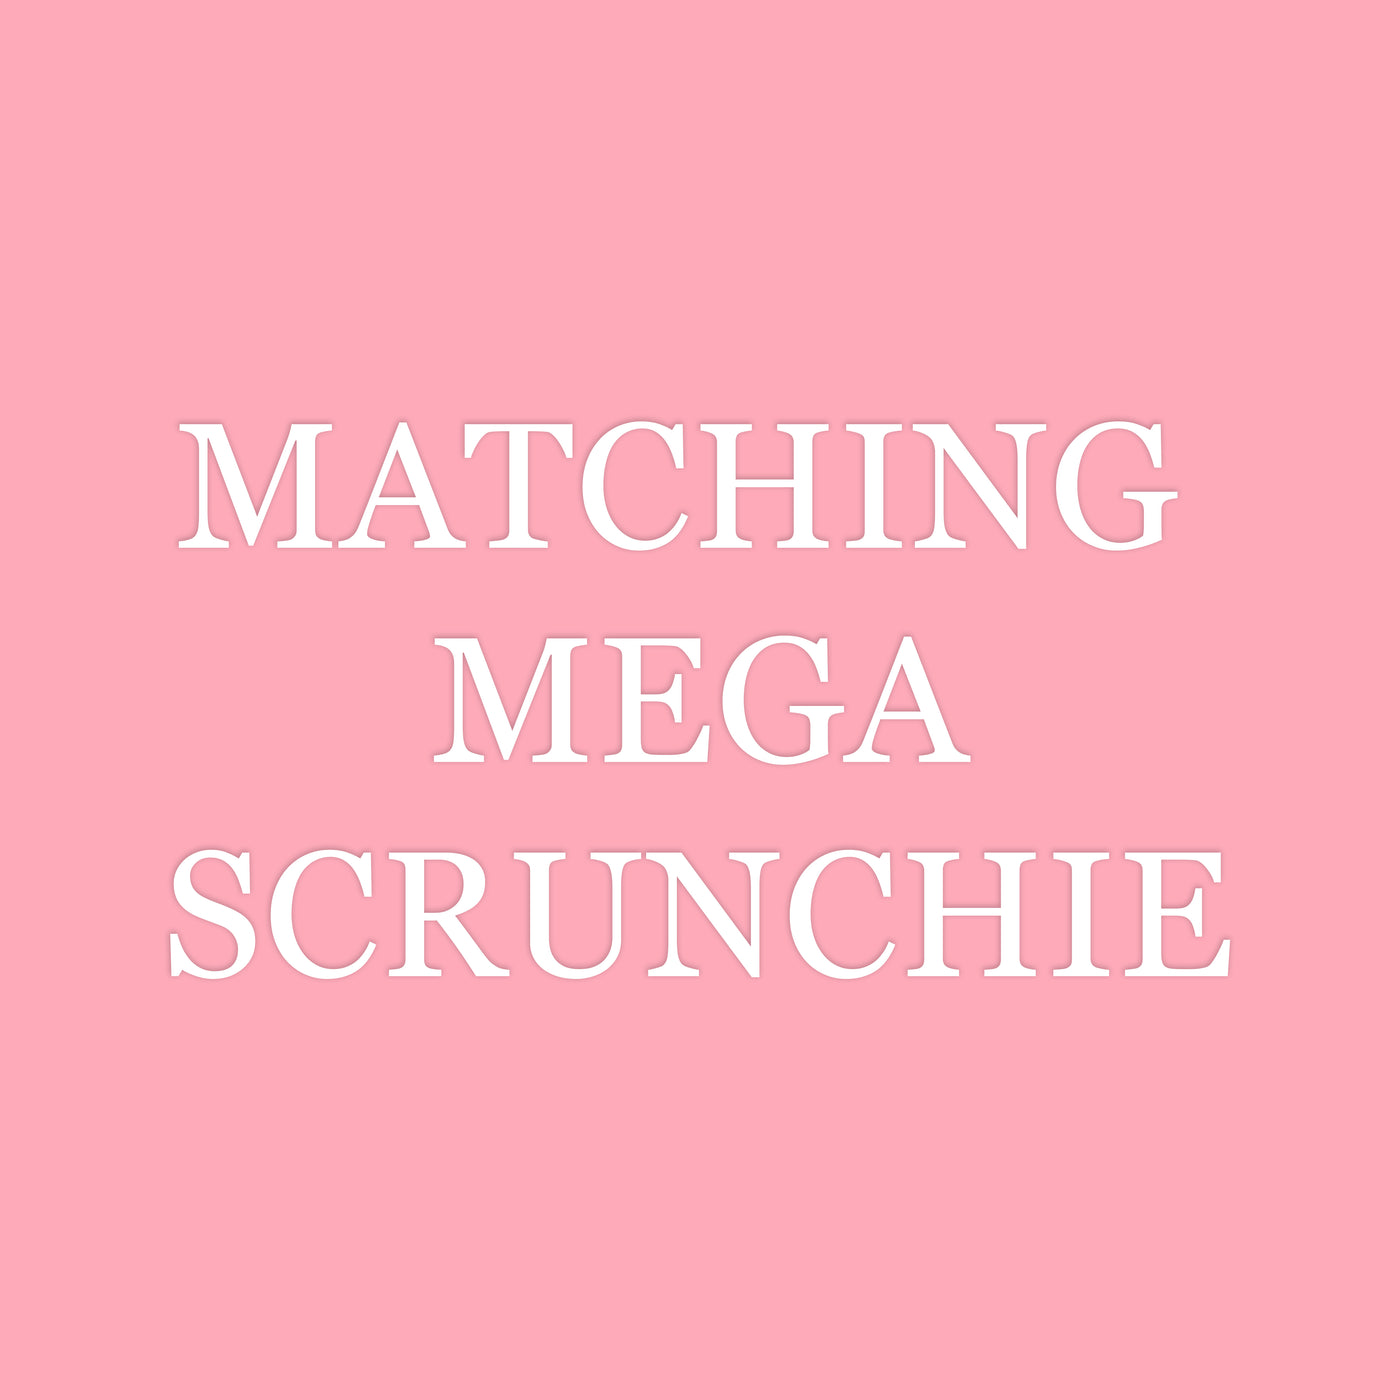 Add a Matching Mega Scrunchie